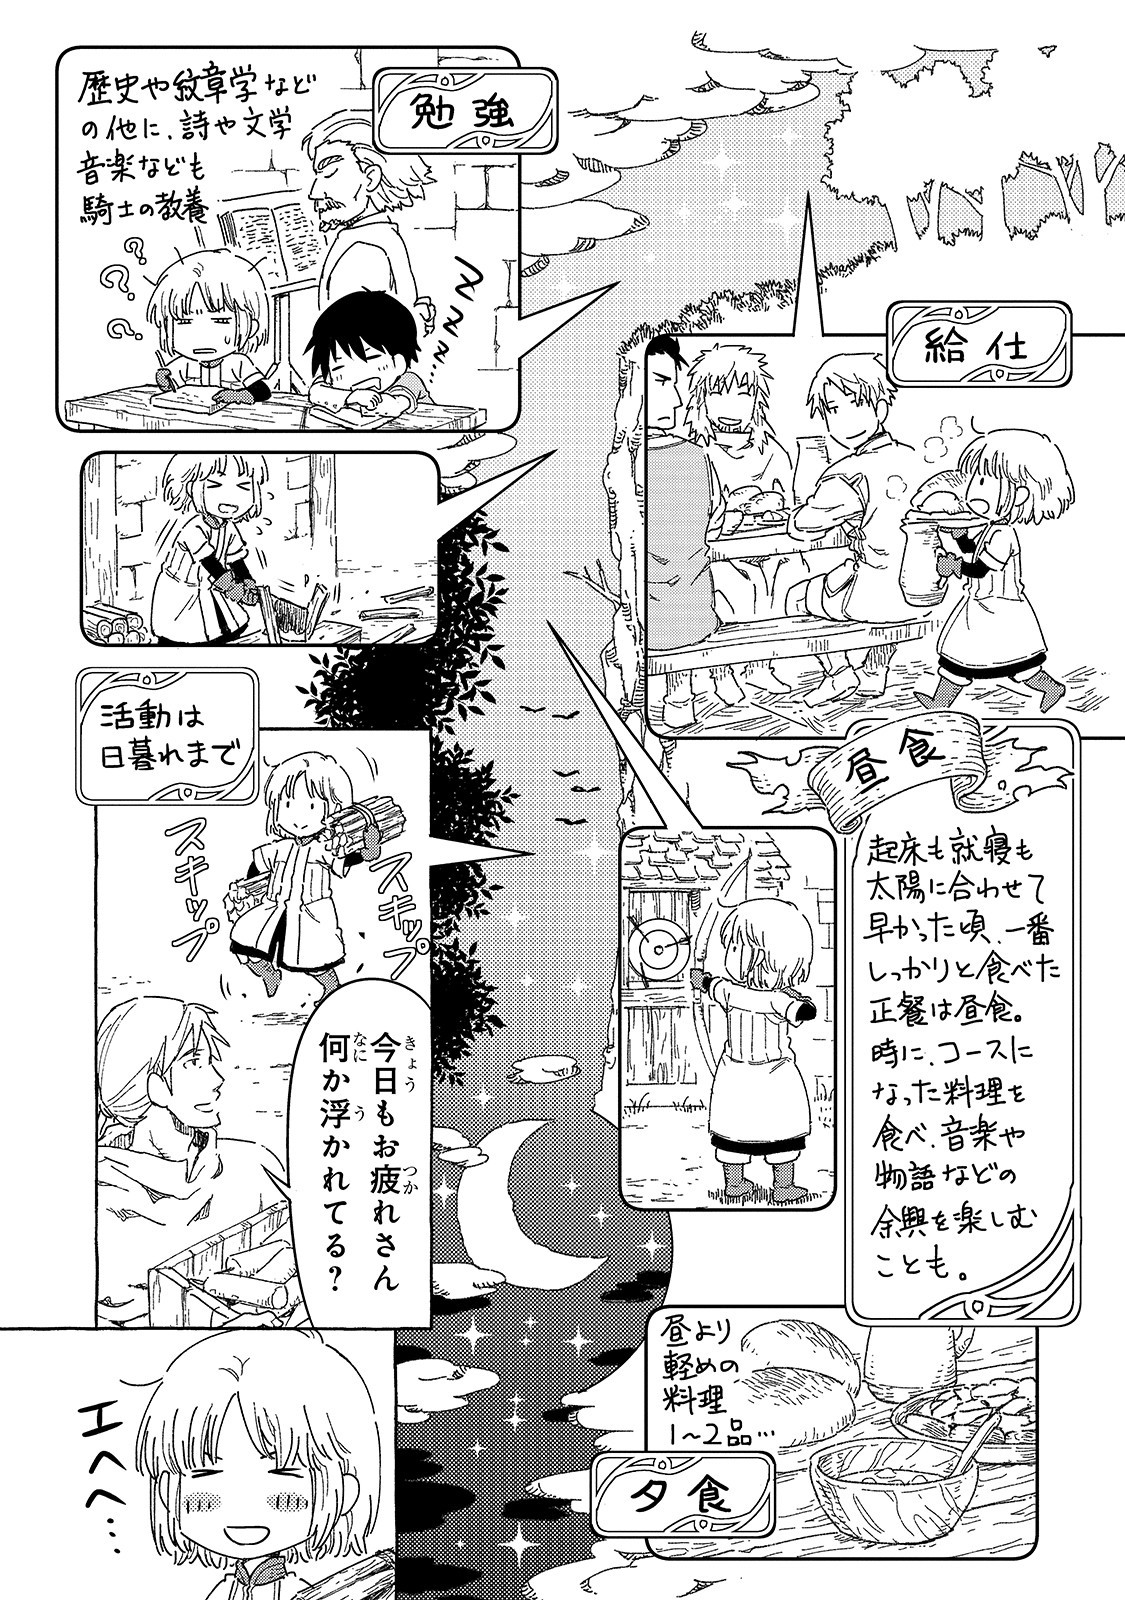 Kishitan wa Jouheki no Naka ni Hanahiraku - Chapter 14.5 - Page 3